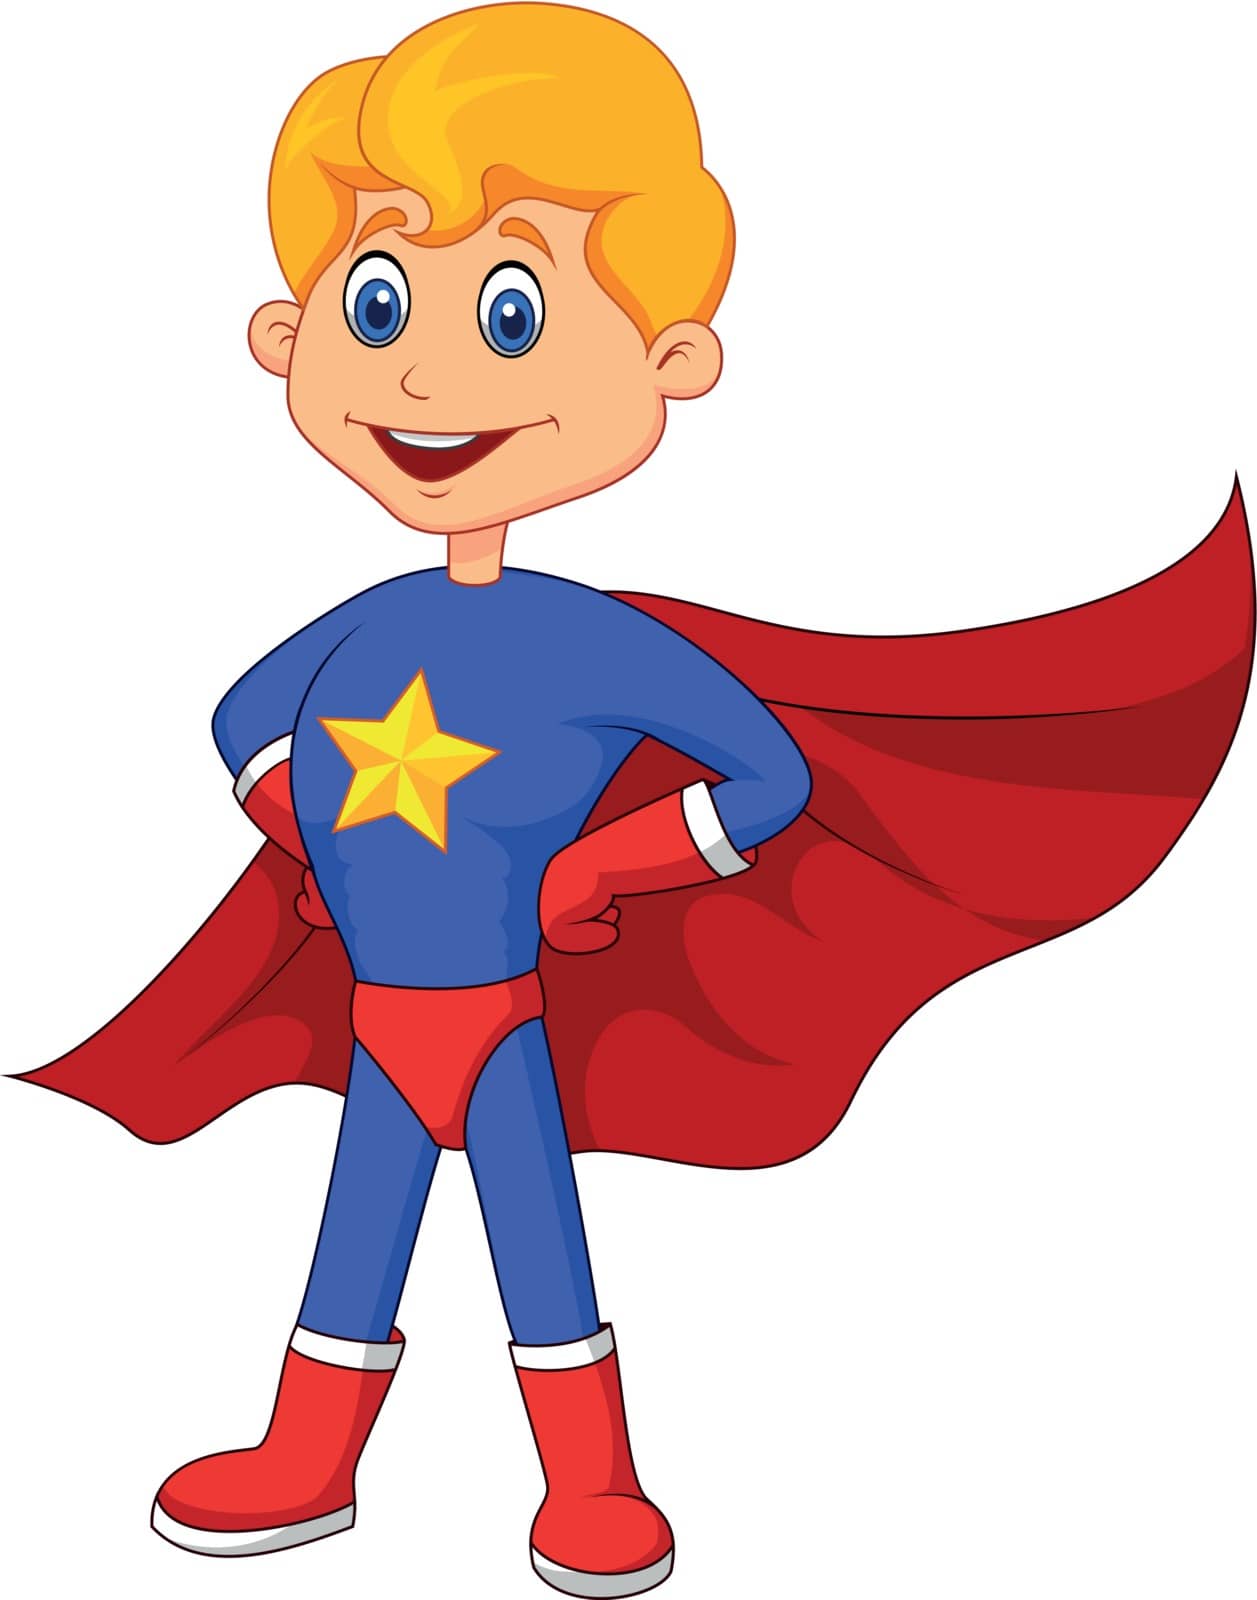 Vector illustration of Super hero boy cartoon posing